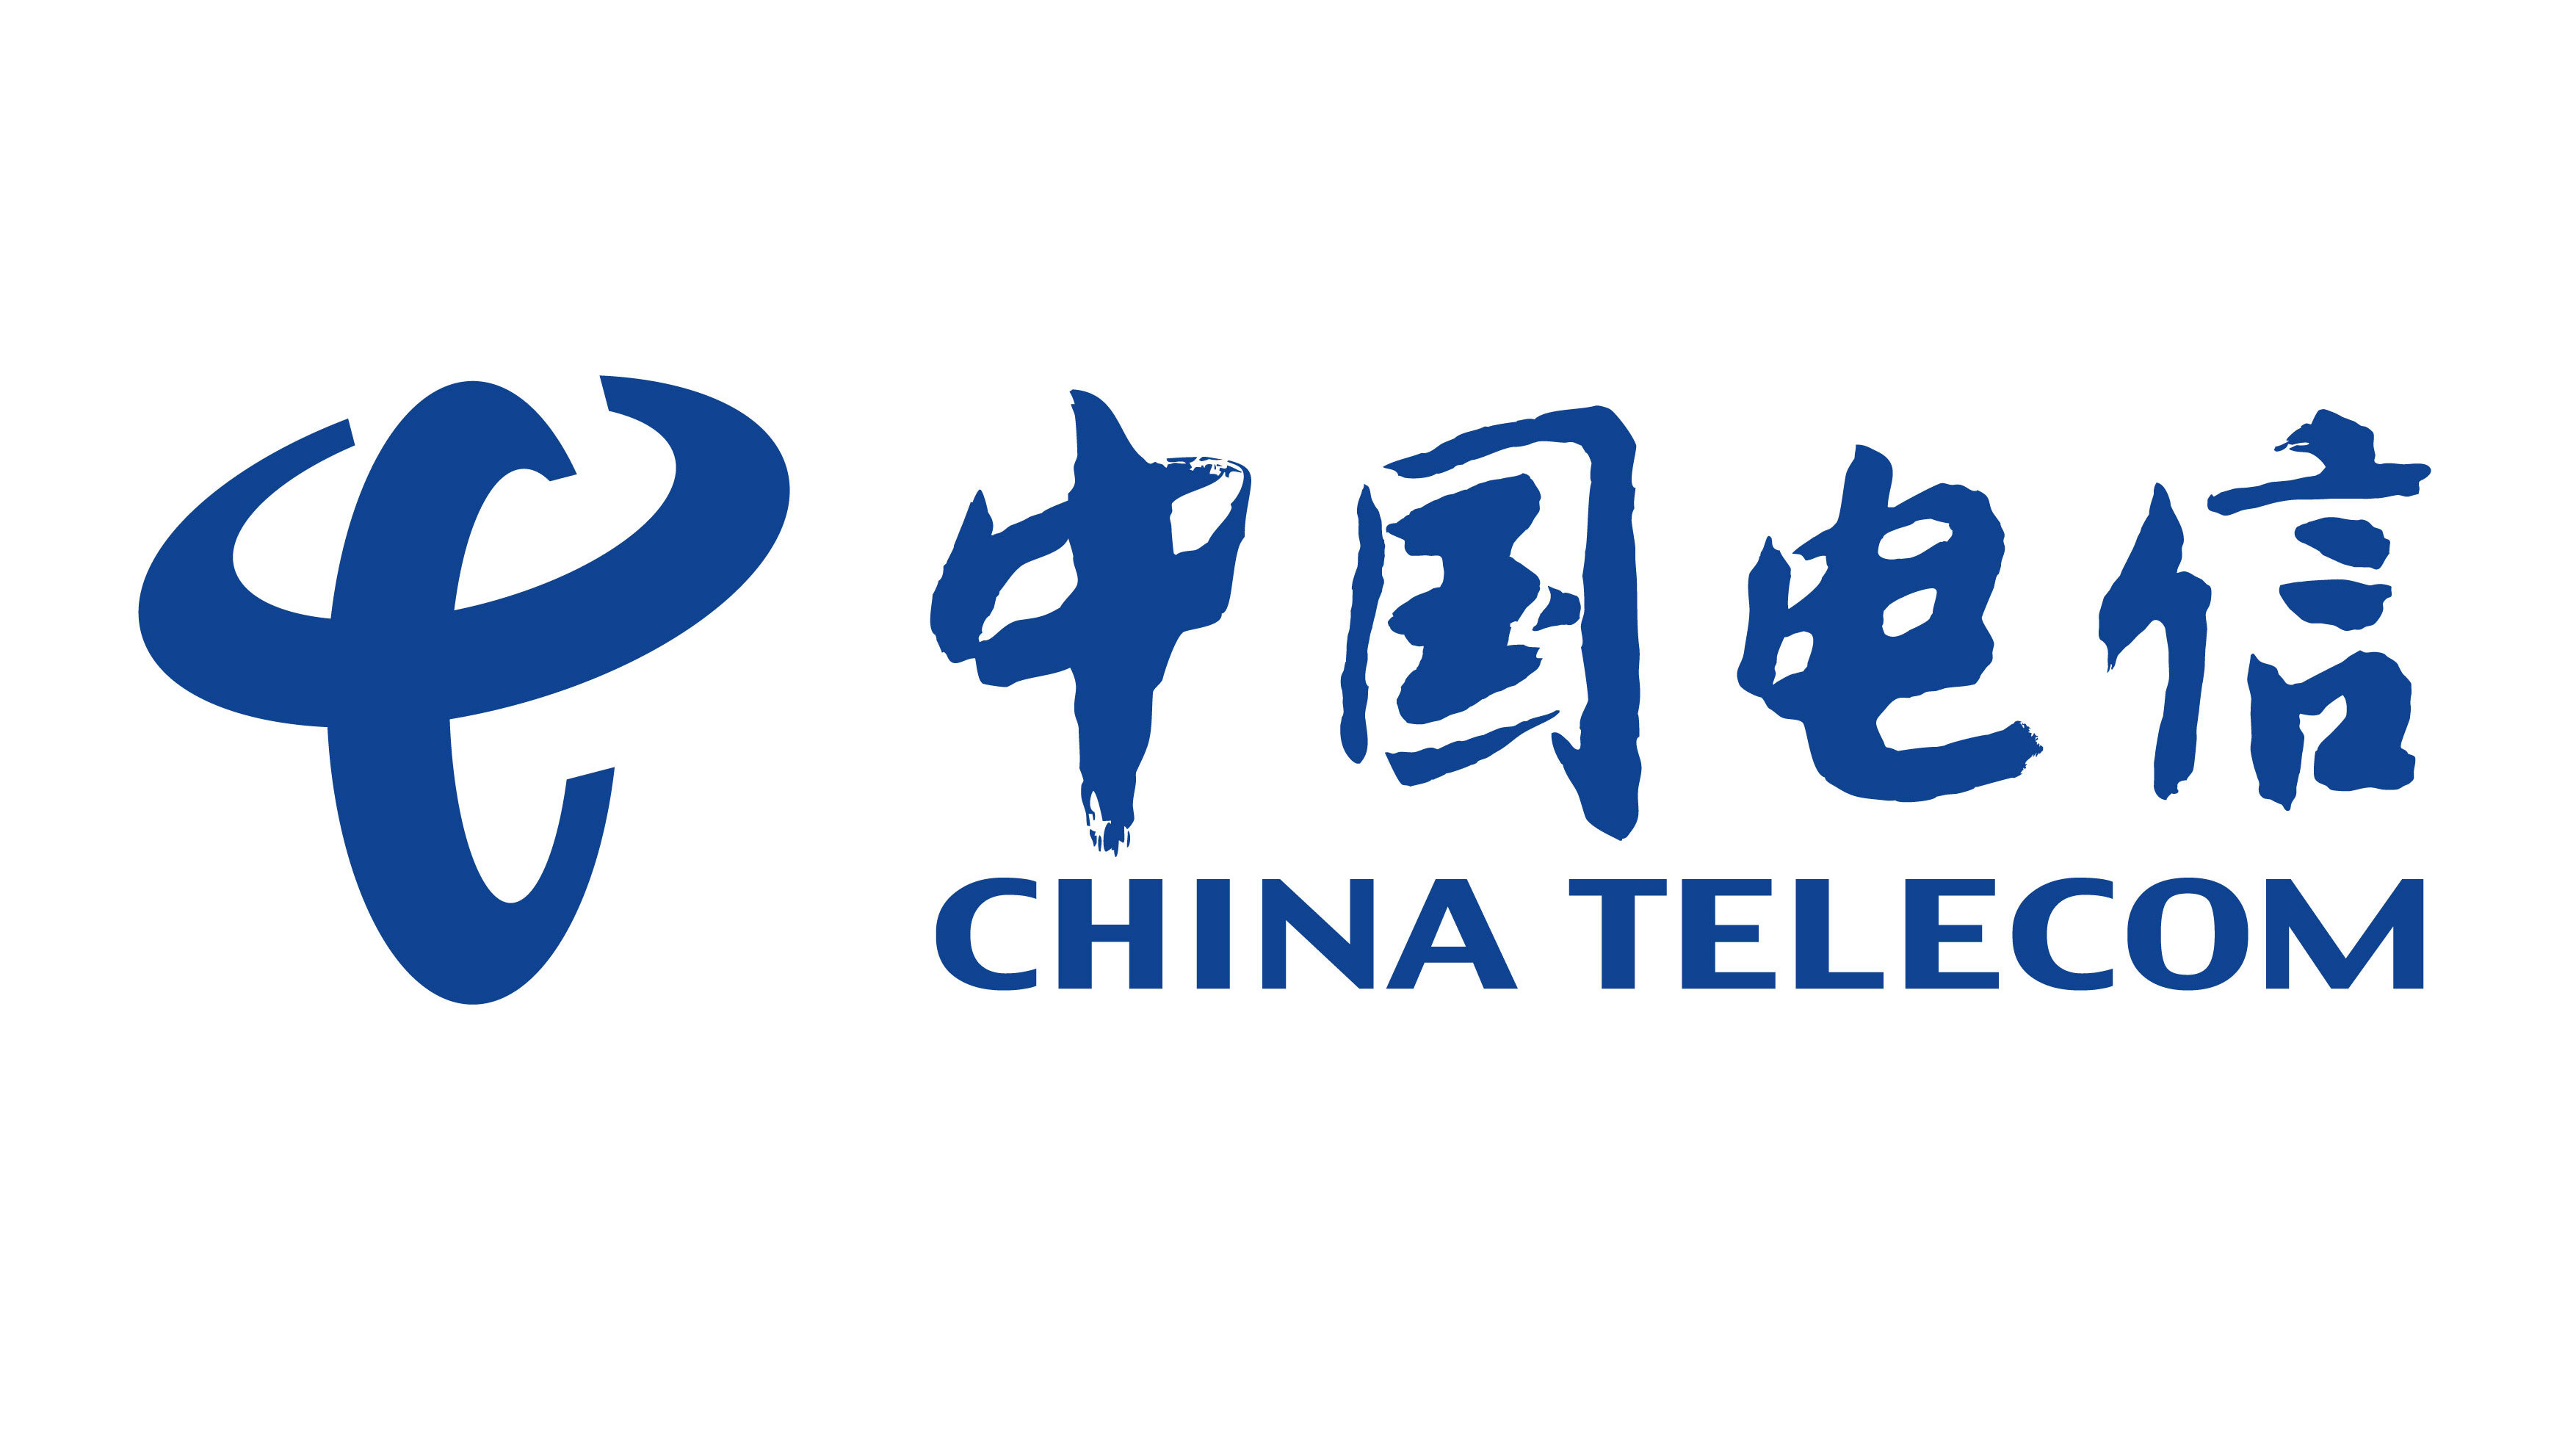 China Telecom 500MB Data Mobile Top-up CN 1.73 $